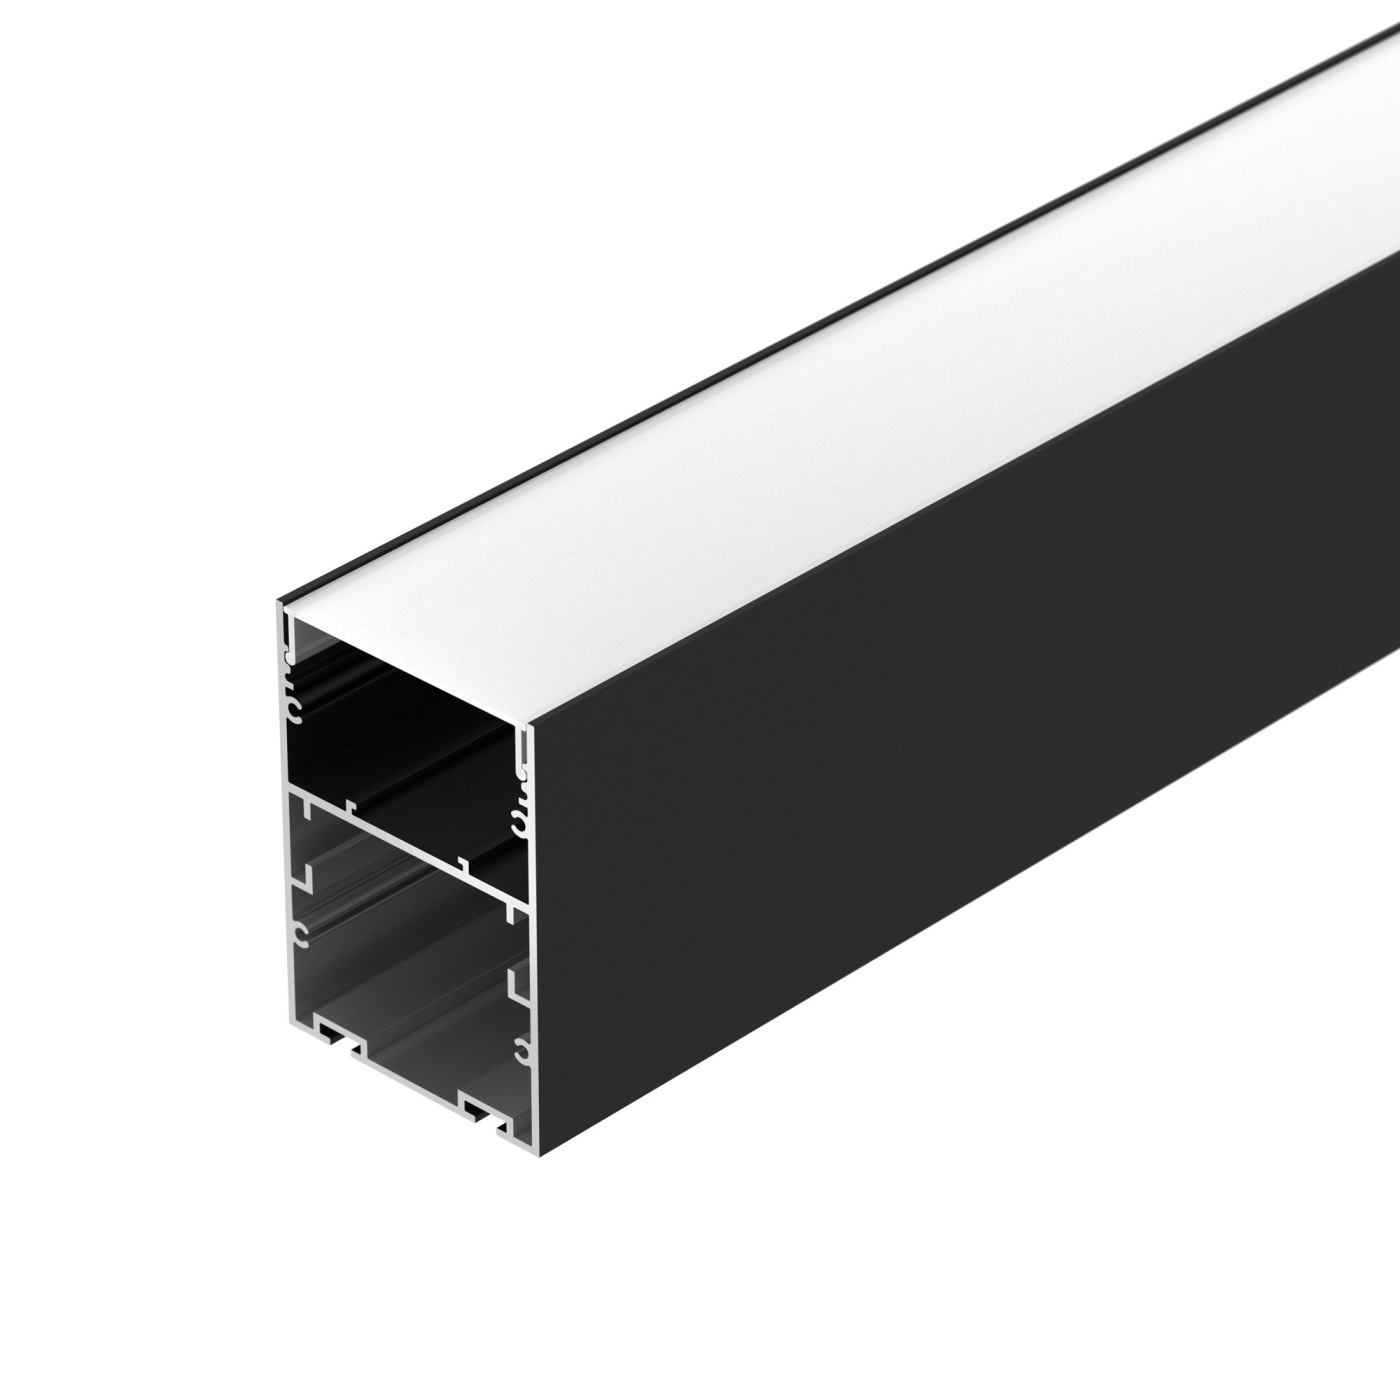 Профиль ARH-LINE-6085-2000 BLACK профиль алюминиевый накладной подвесной с отсеком для бп серебро cab266